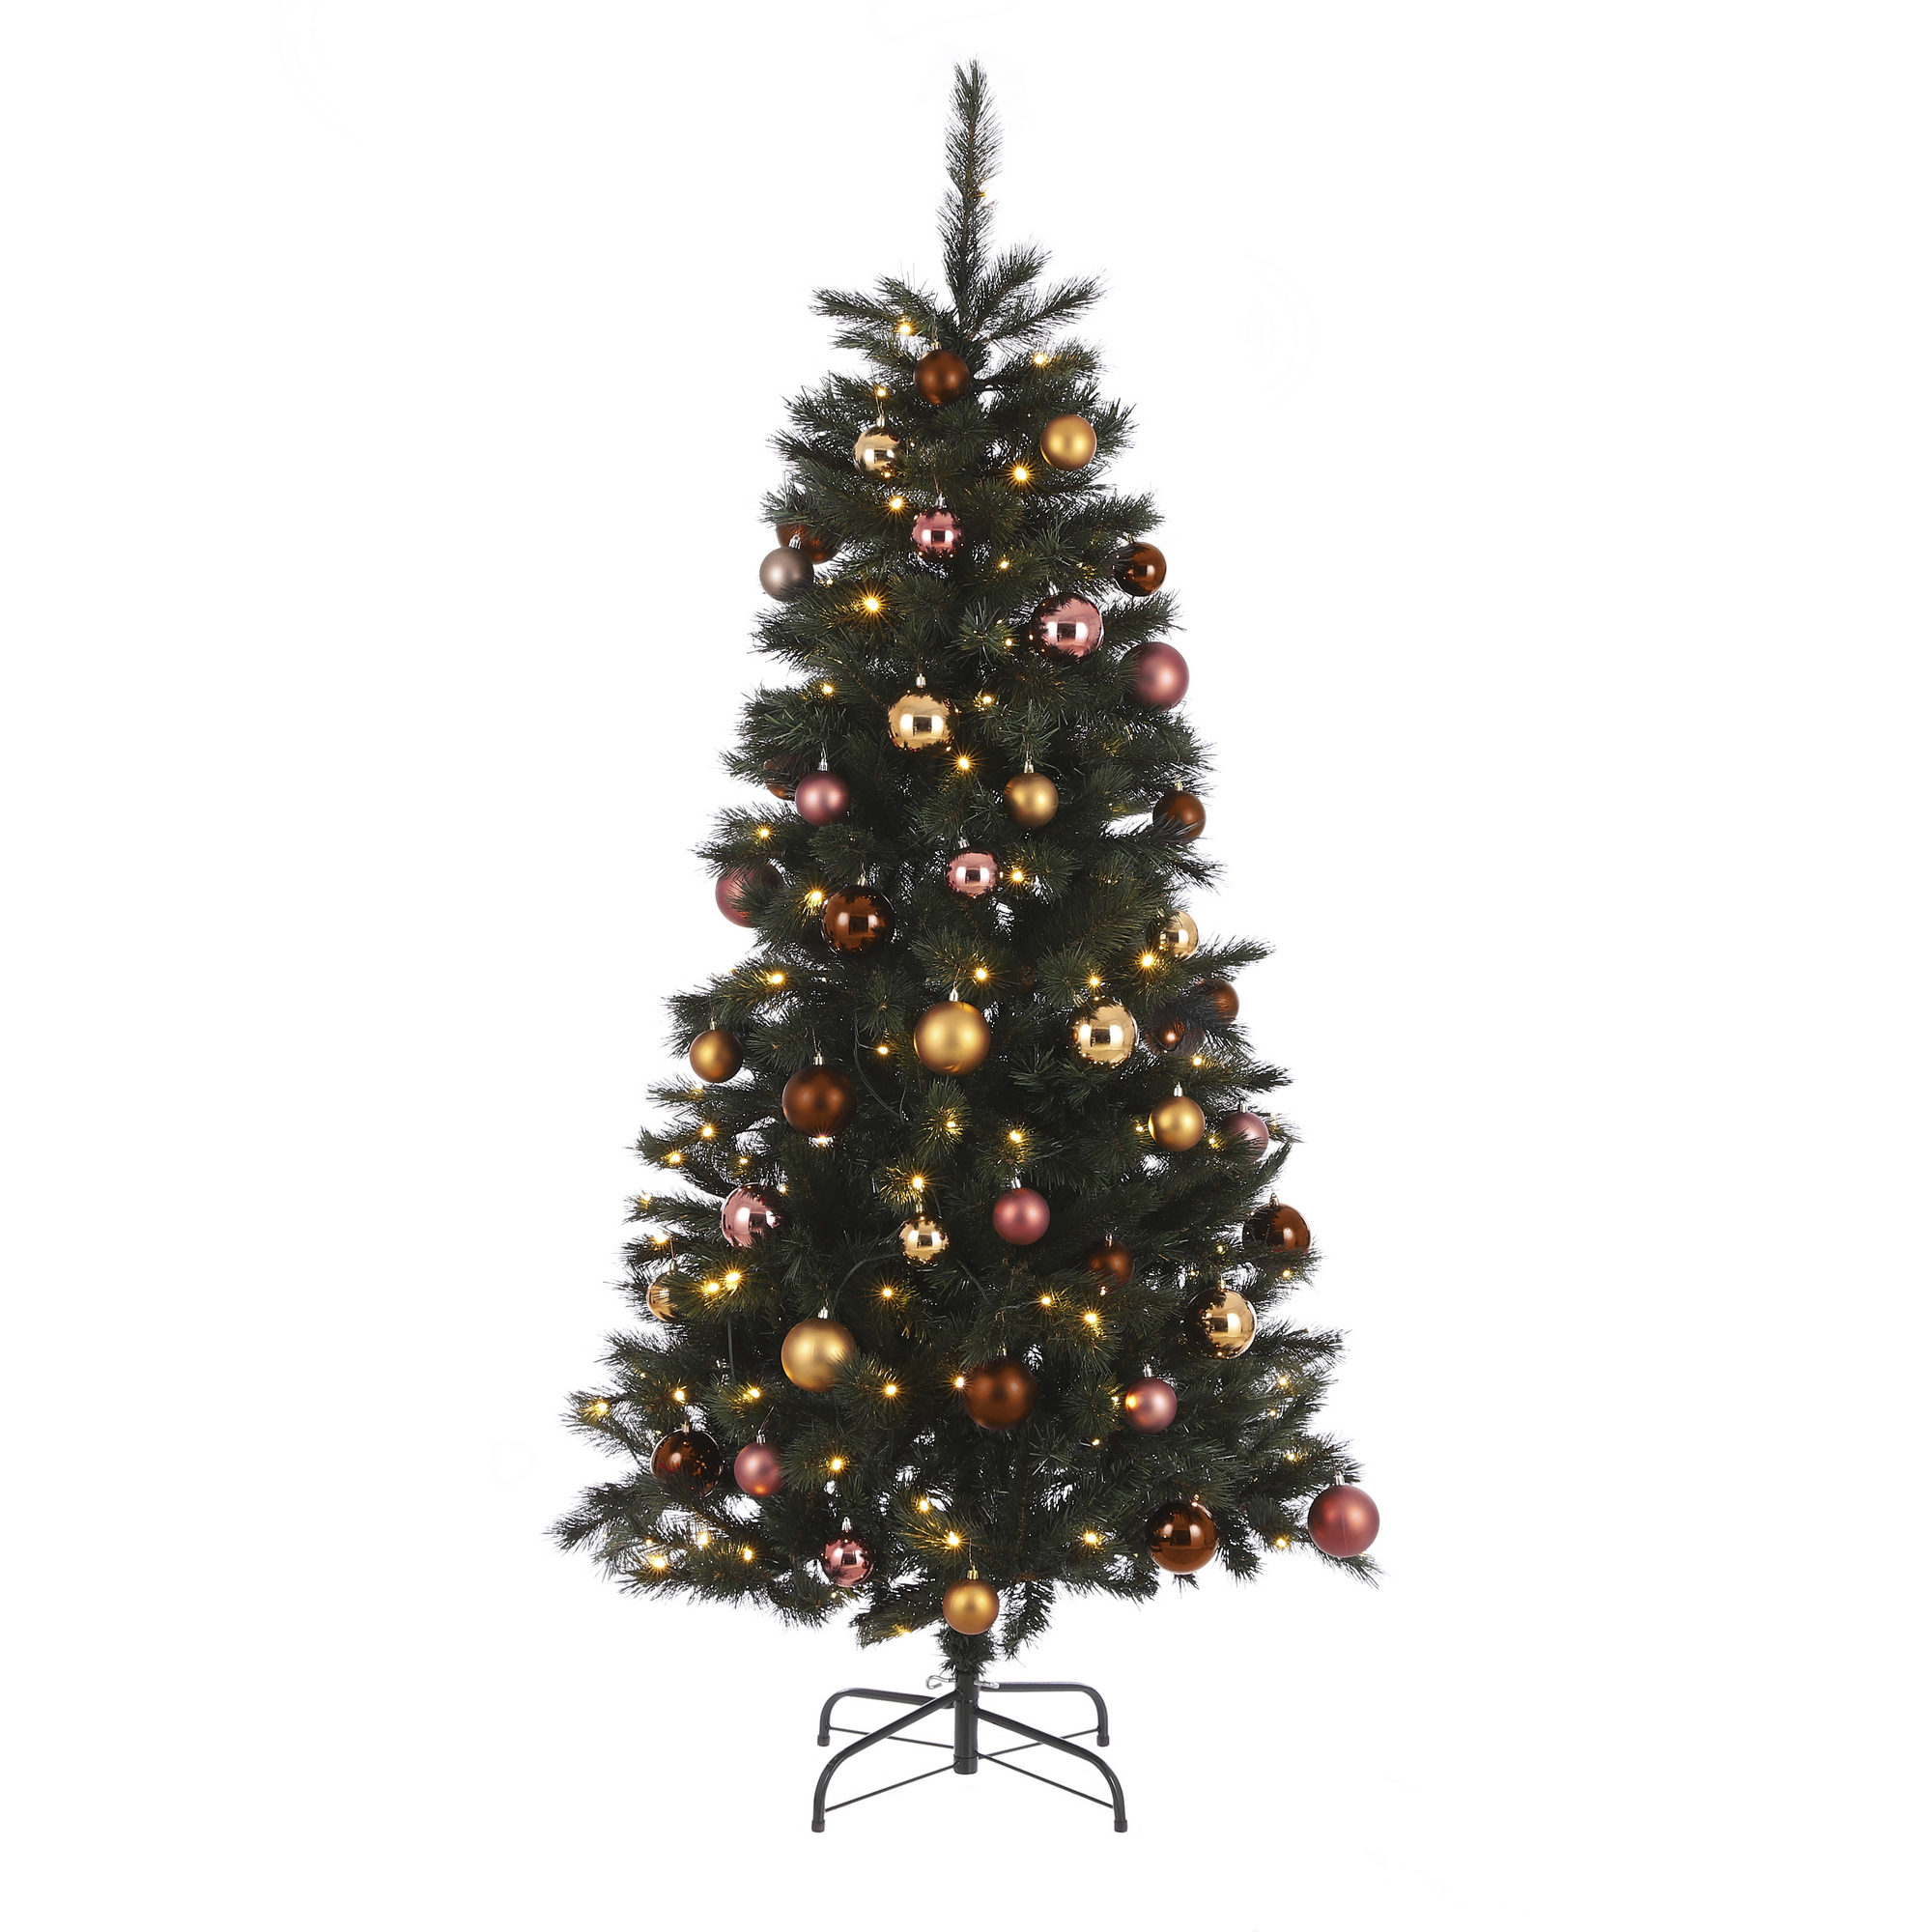 Künstlicher Weihnachtsbaum 'Voss' grün/braun/rosa 185 cm, mit LED-Beleuchtung + product picture